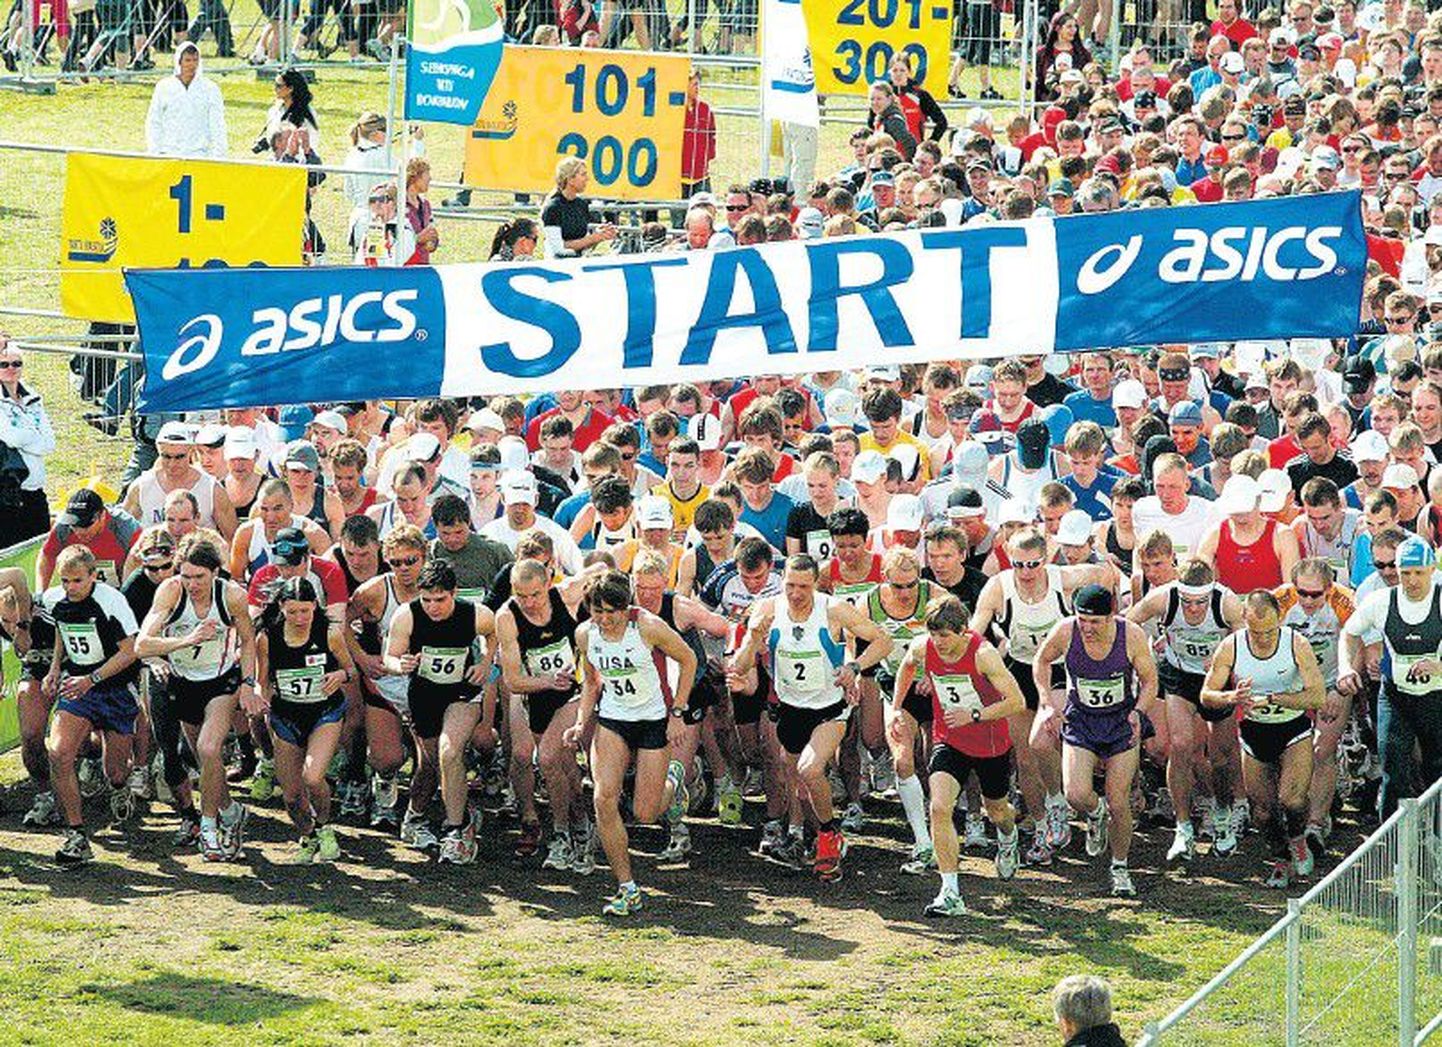 Tartu jooksumaratoni, mida eelmisel sajandil kutsuti Tartu sügisjooksuks, on läbi aegade lõpetanud enam kui 21 000 jooksuhuvilist. Lastejooksude finišijoone on aastate jooksul ületanud aga pea 22 000 noort tervisesportlast.